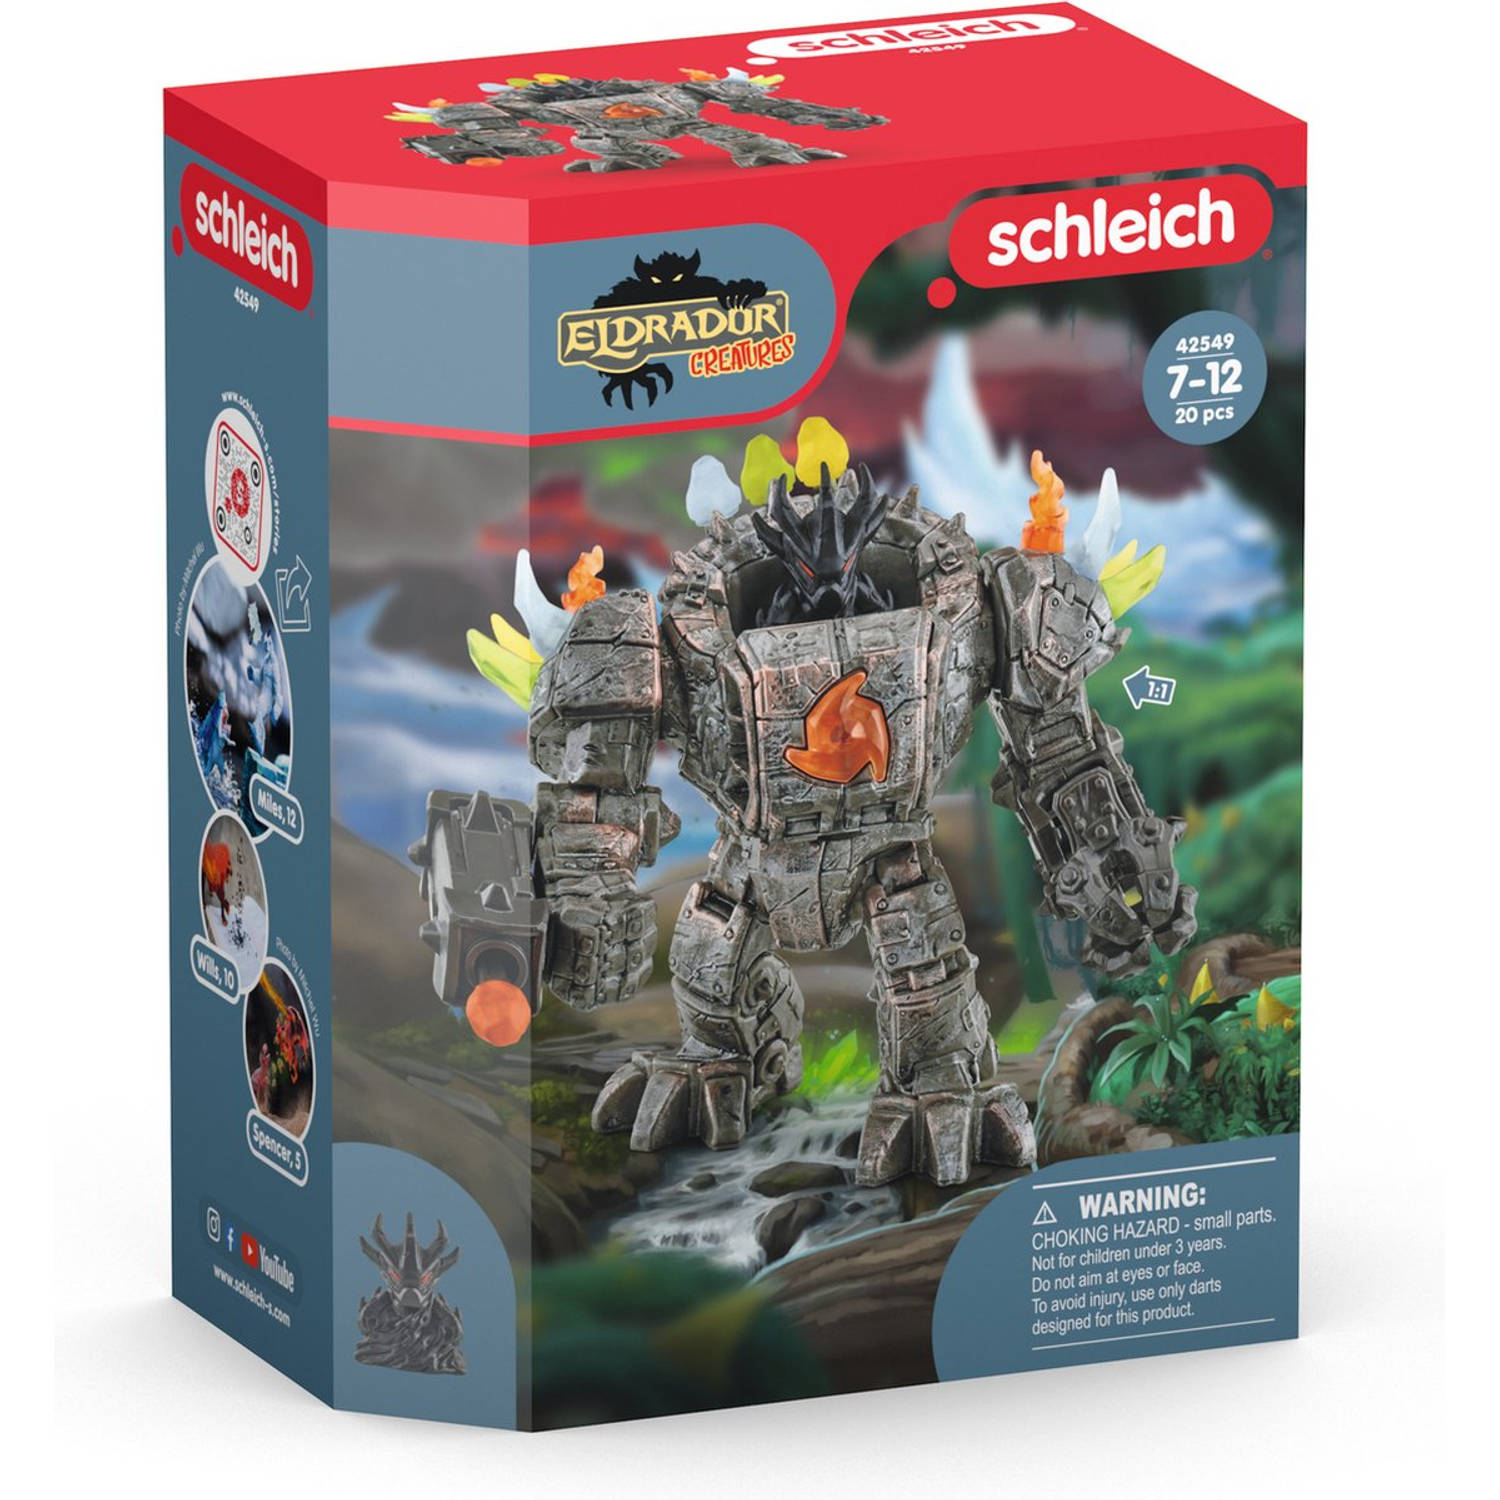 Schleich® Speelfiguur Eldrador, Master Roboter (42549)